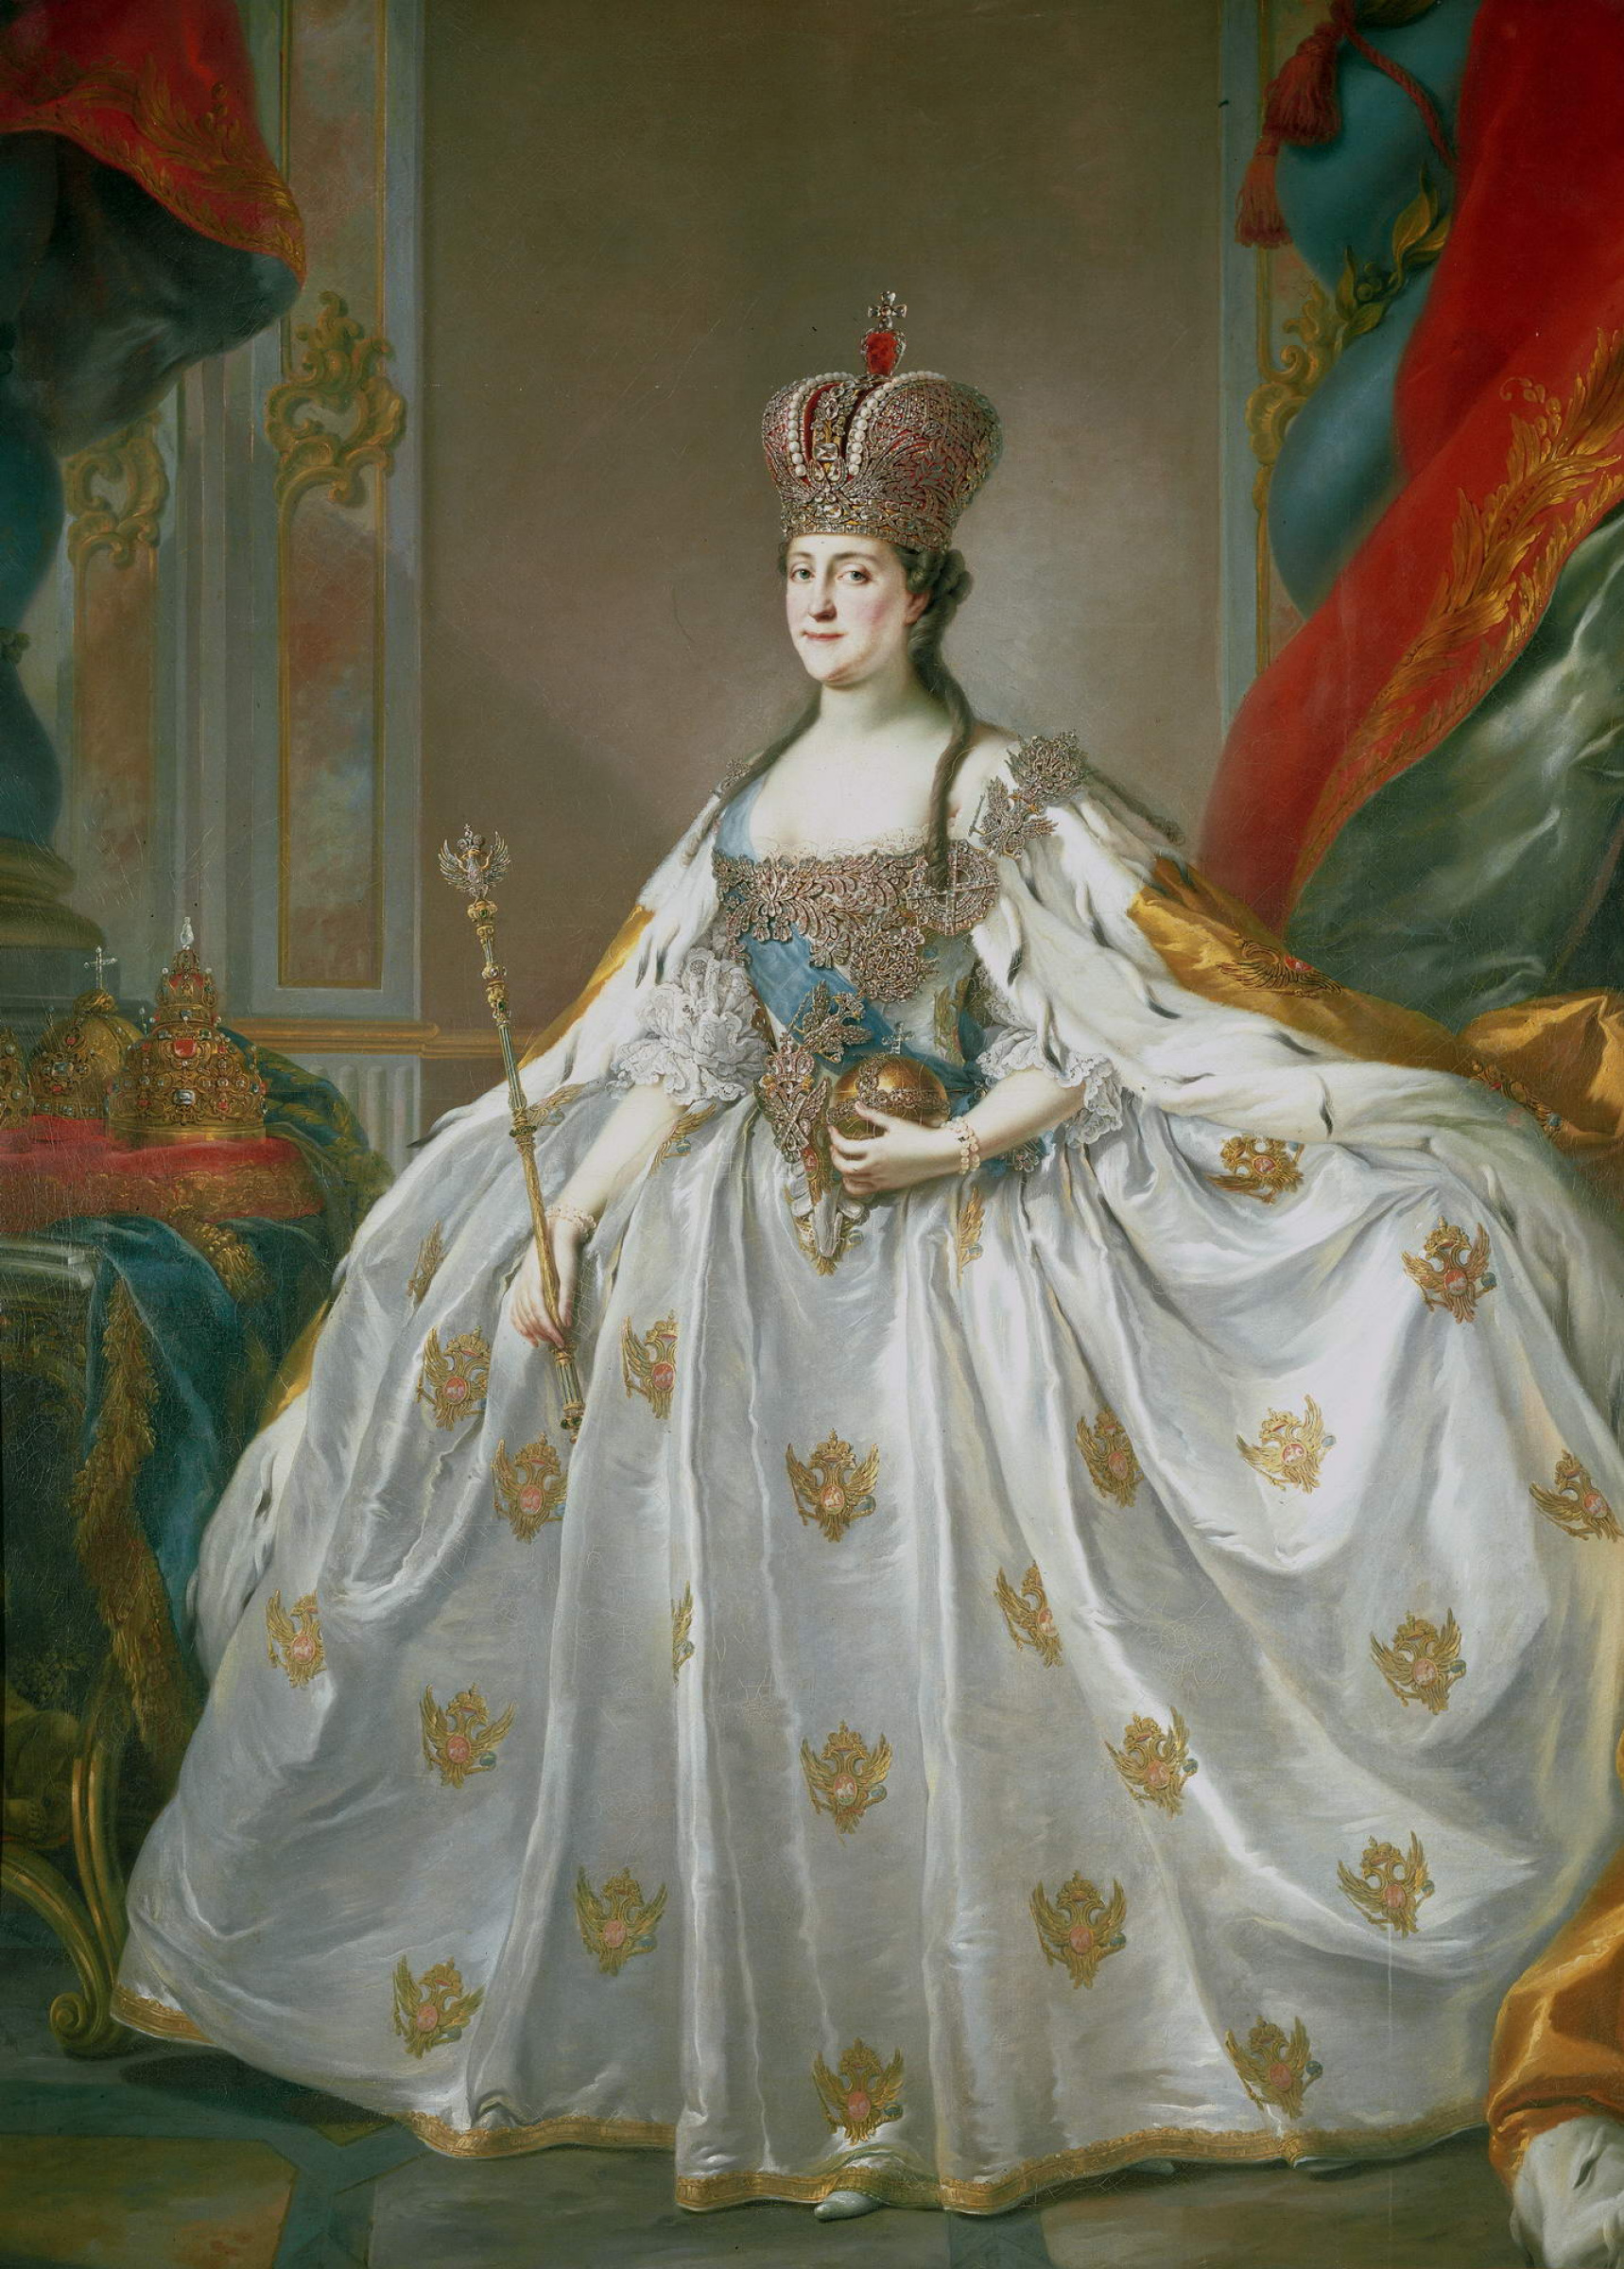 Stefano Torelli Retrato de la emperatriz catalina II de rusia, 1761,  178×244 cm: Descripción de la obra | Arthive